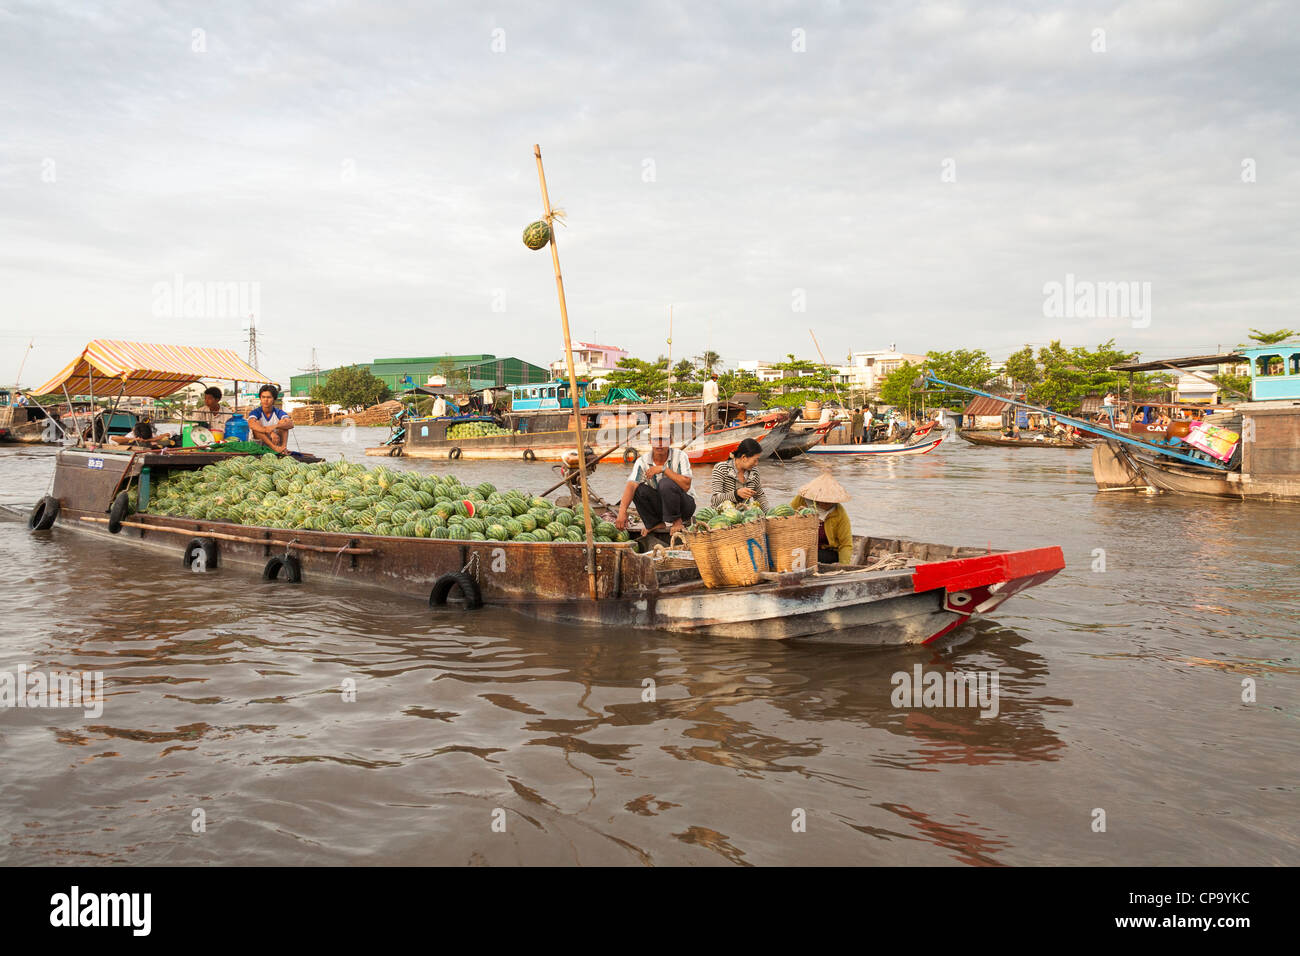 Boot beladen mit Wassermelonen in der schwimmende Markt Cai Rang in der Nähe von Can Tho, Mekong-Fluss-Delta, Vietnam Stockfoto